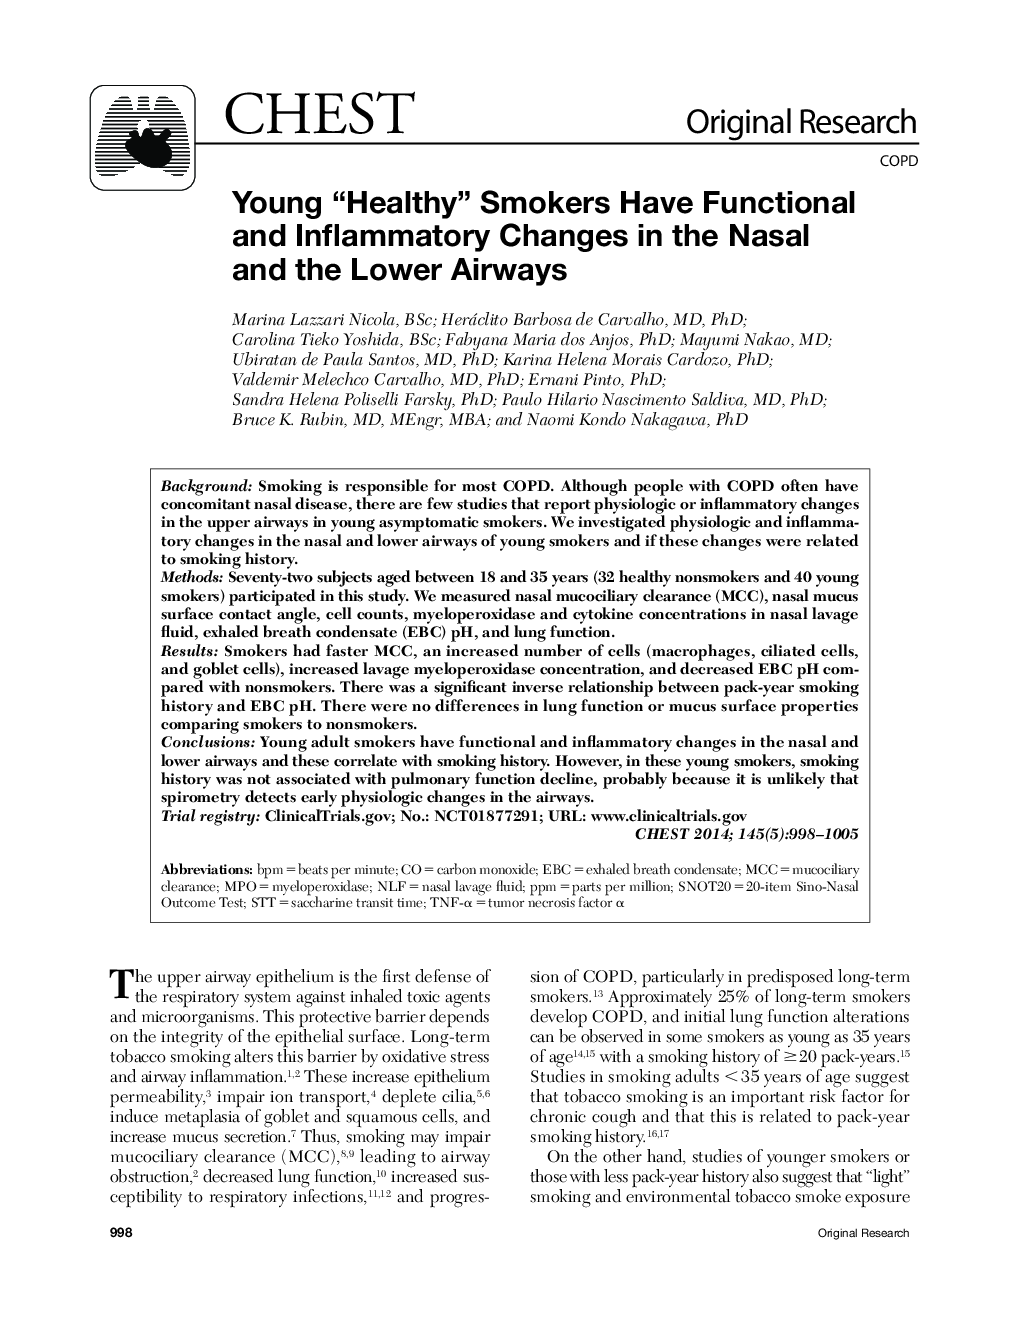 جوان سلامتی ؟؟ افراد سیگاری تغییرات عملکردی و التهابی را در ناحیه بینی و پایین تر هوایی دارند 